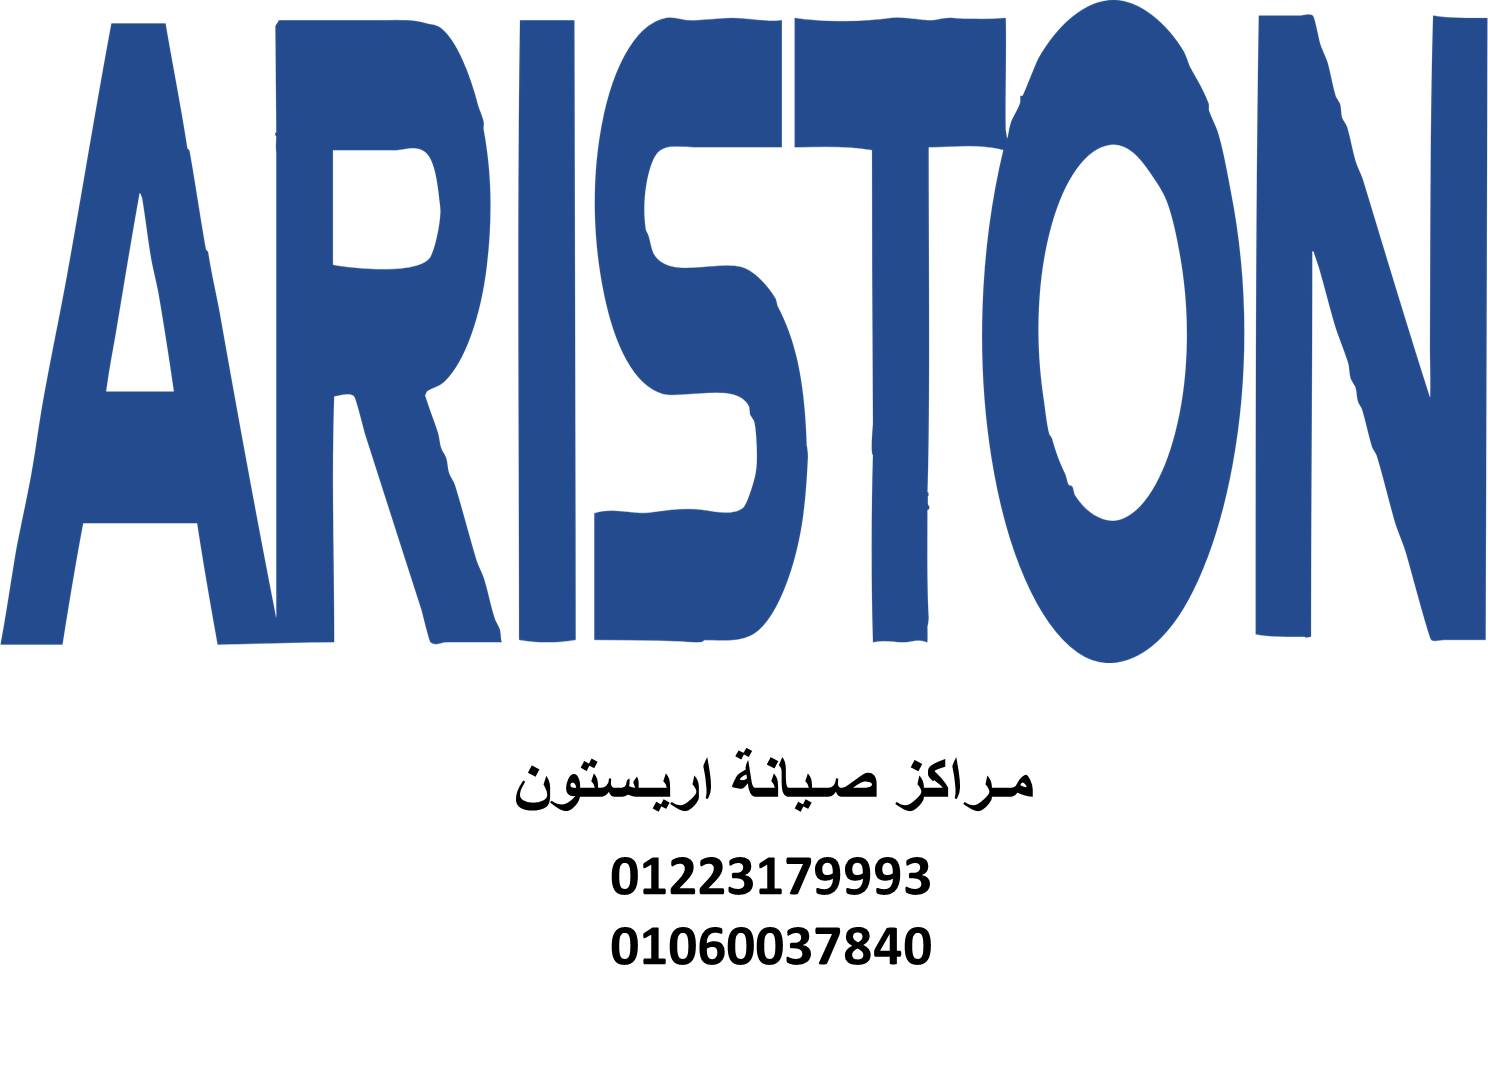 مركز صيانة اريستون مدينة نصر 01220261030 صيانة اريستون في مدينة نصر